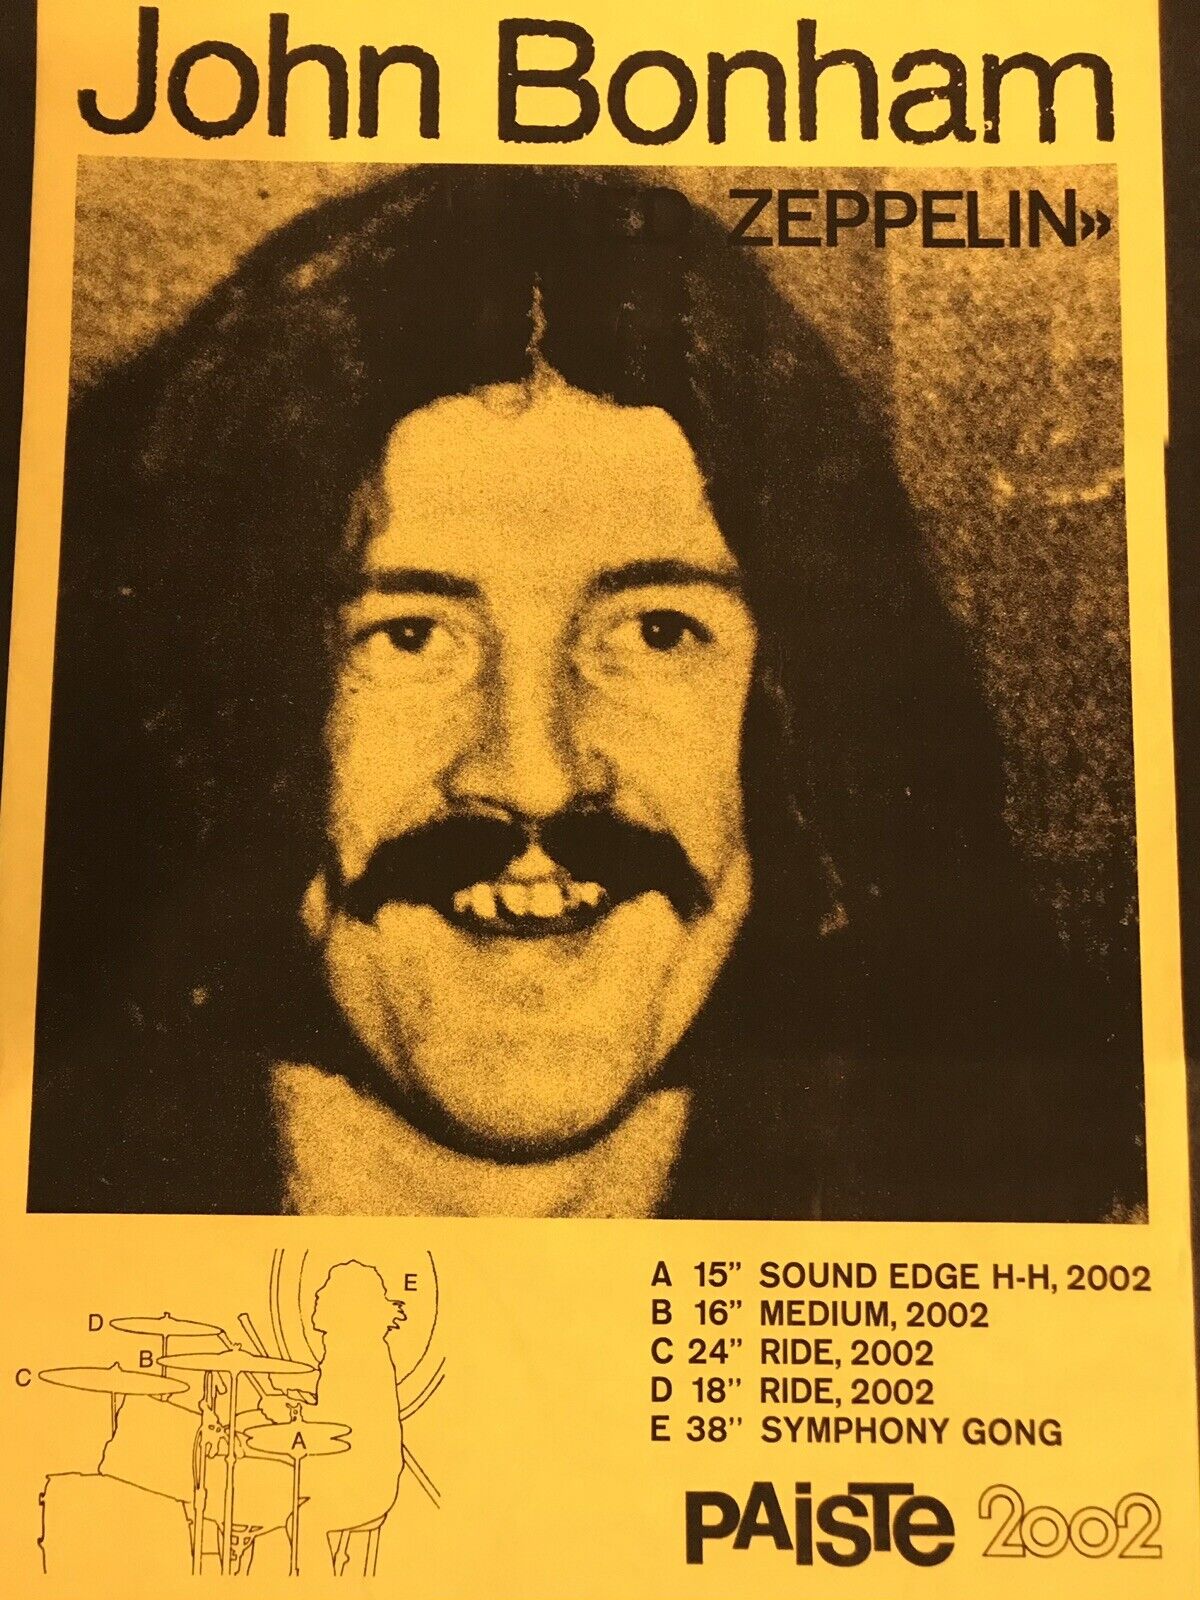 John Bonham Zeppelin Paiste Promo Poster Brand new reproduction of late 1970s ad